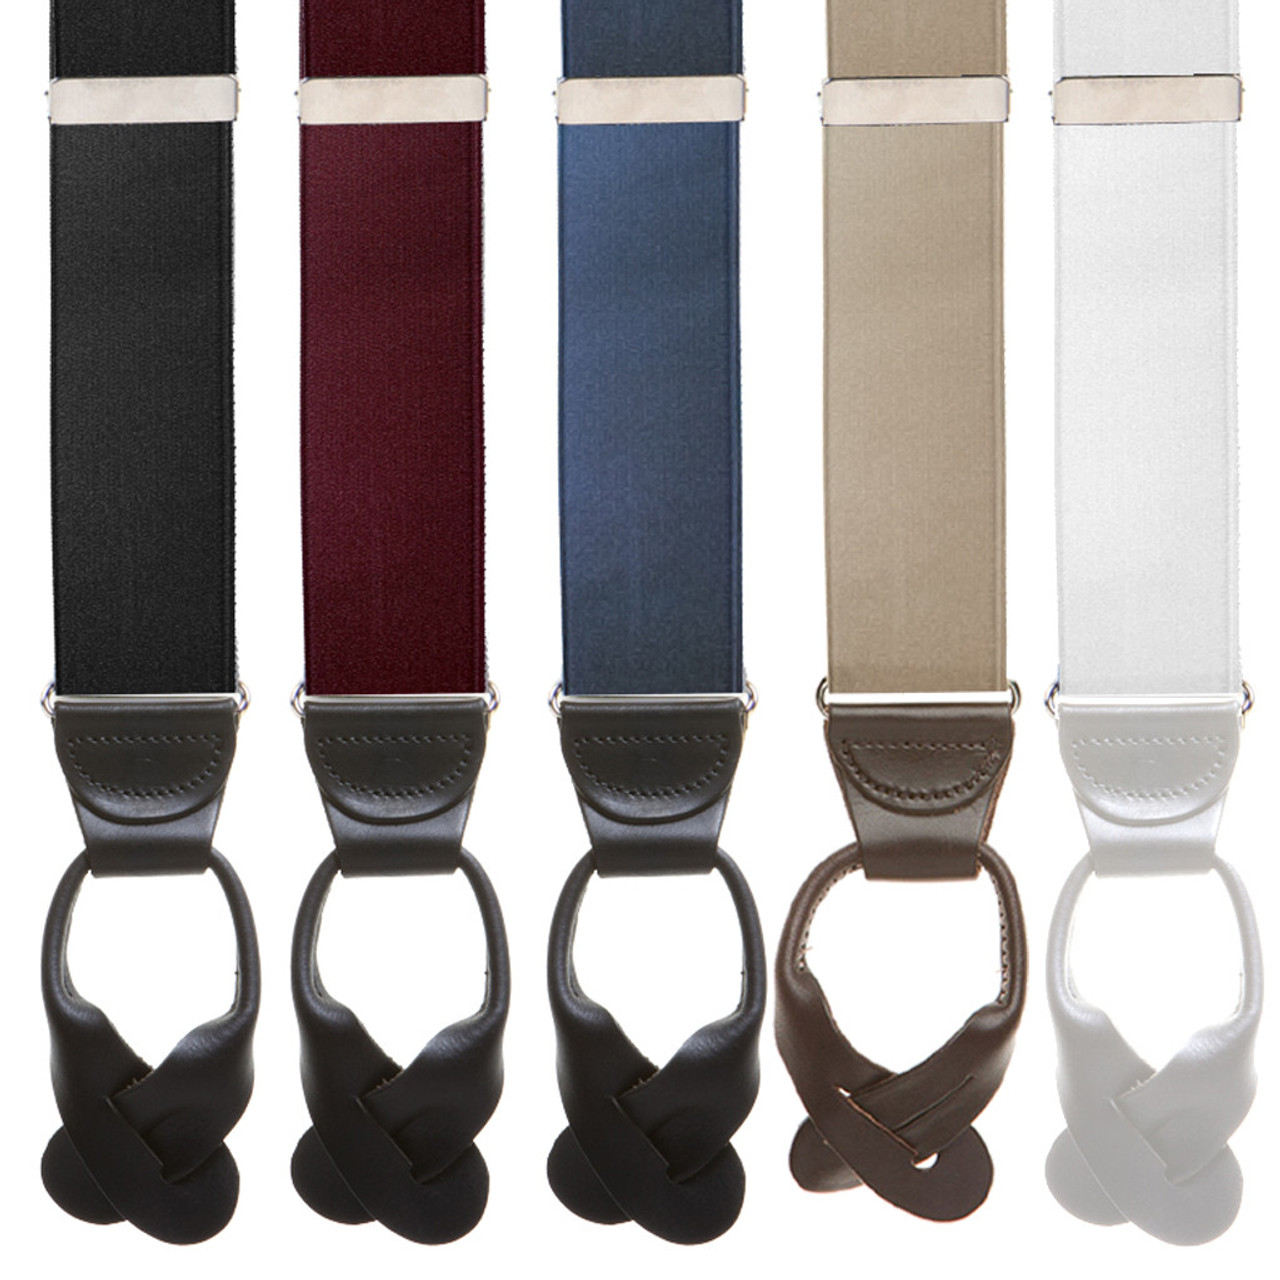 ButtonMode Suspender Brace Pant Buttons Set Includes 1-Dozen Pants